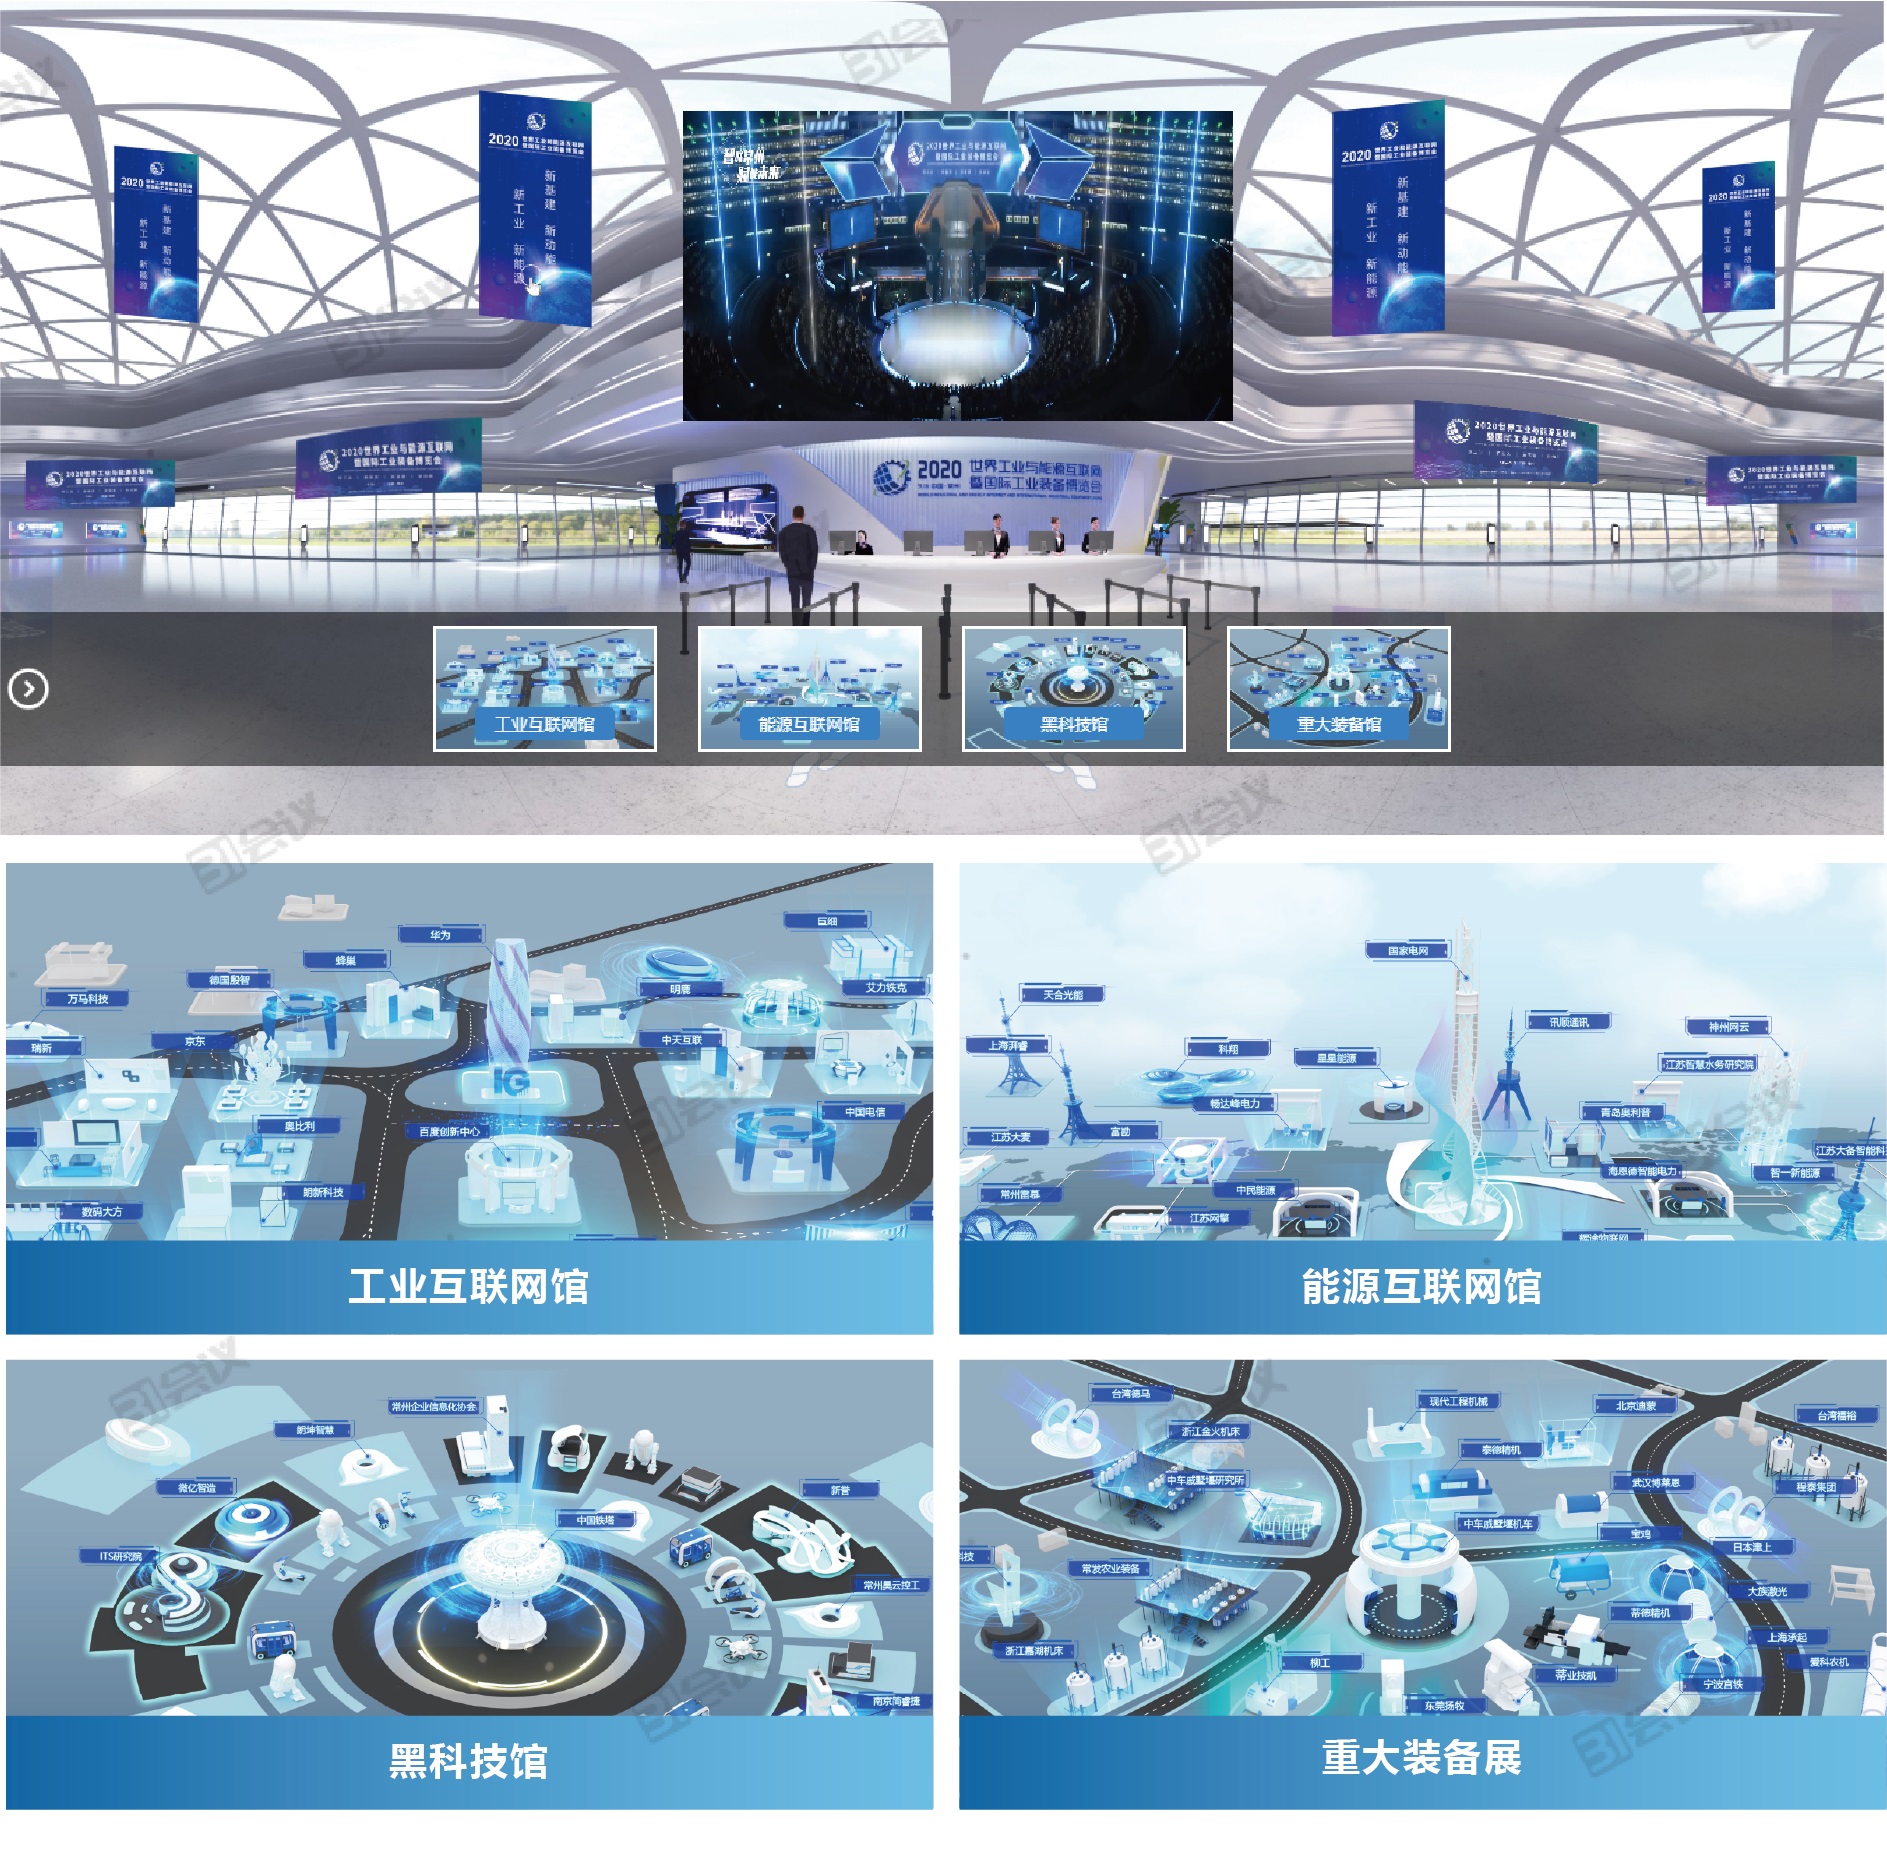 6-2020世界工业和能源互联网暨国际工业装备博览会.jpg